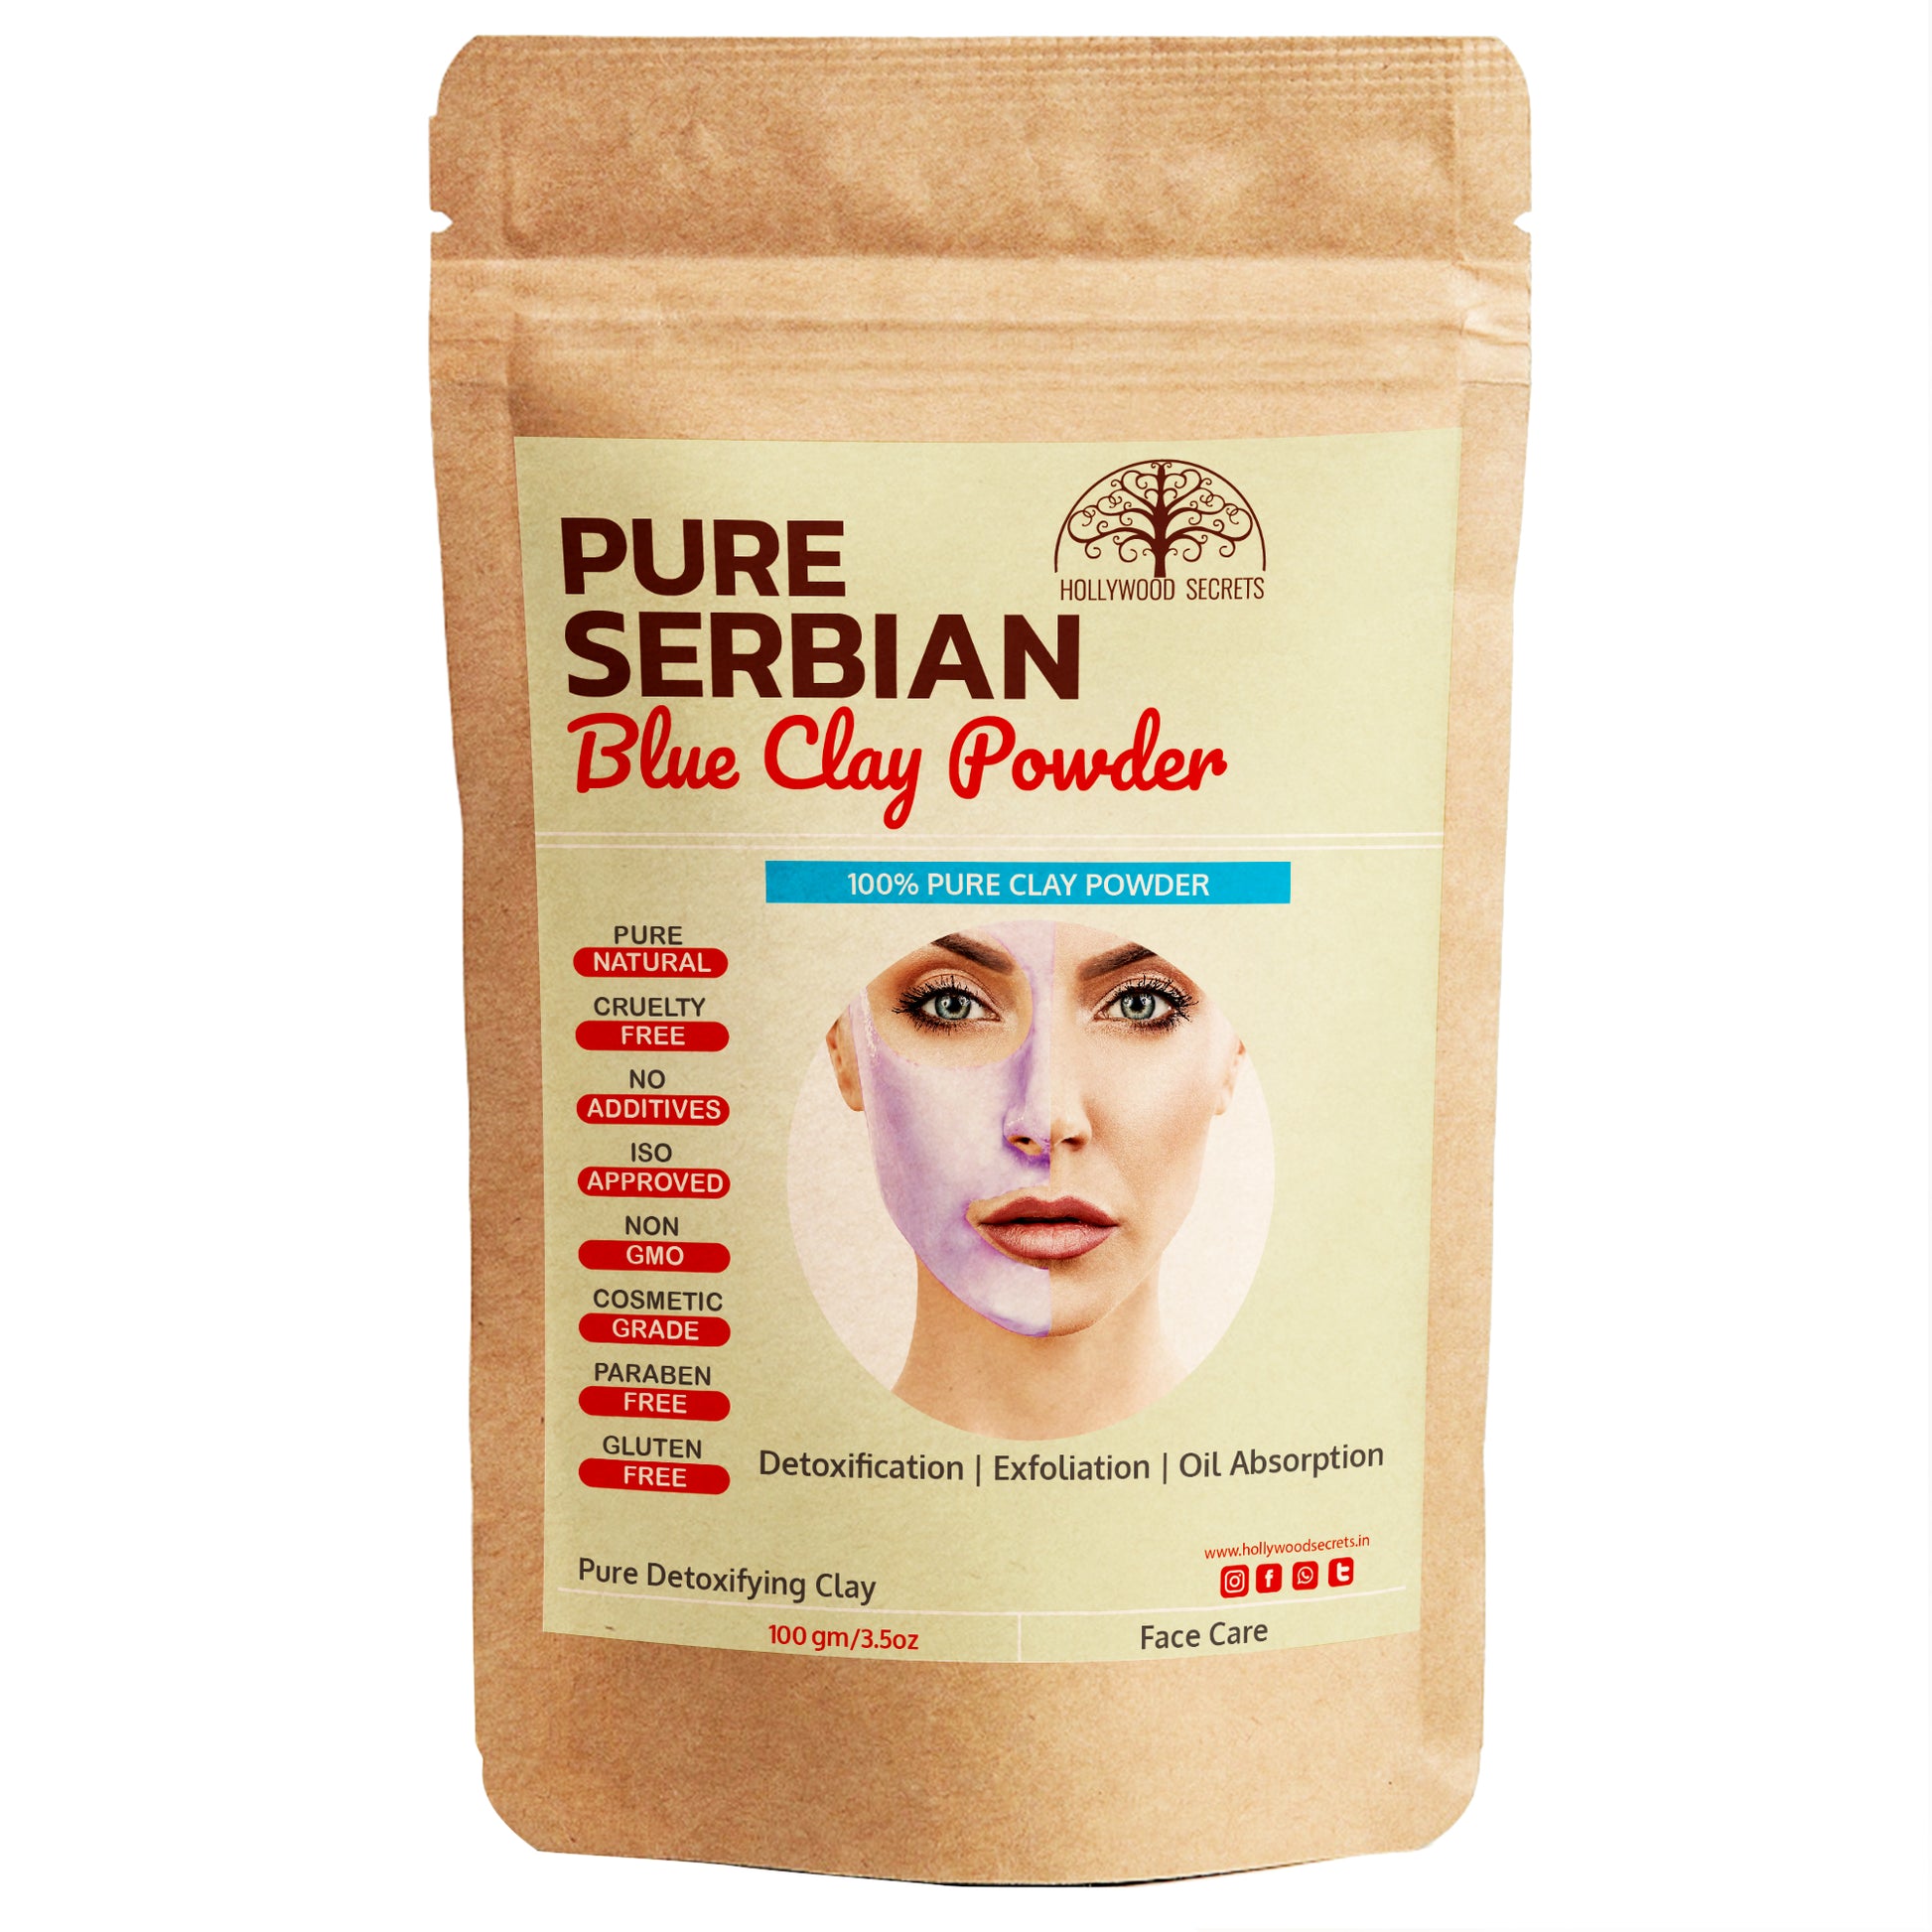 Pure Serbian Blue Clay Powder 100Gms Hollywood Secrets